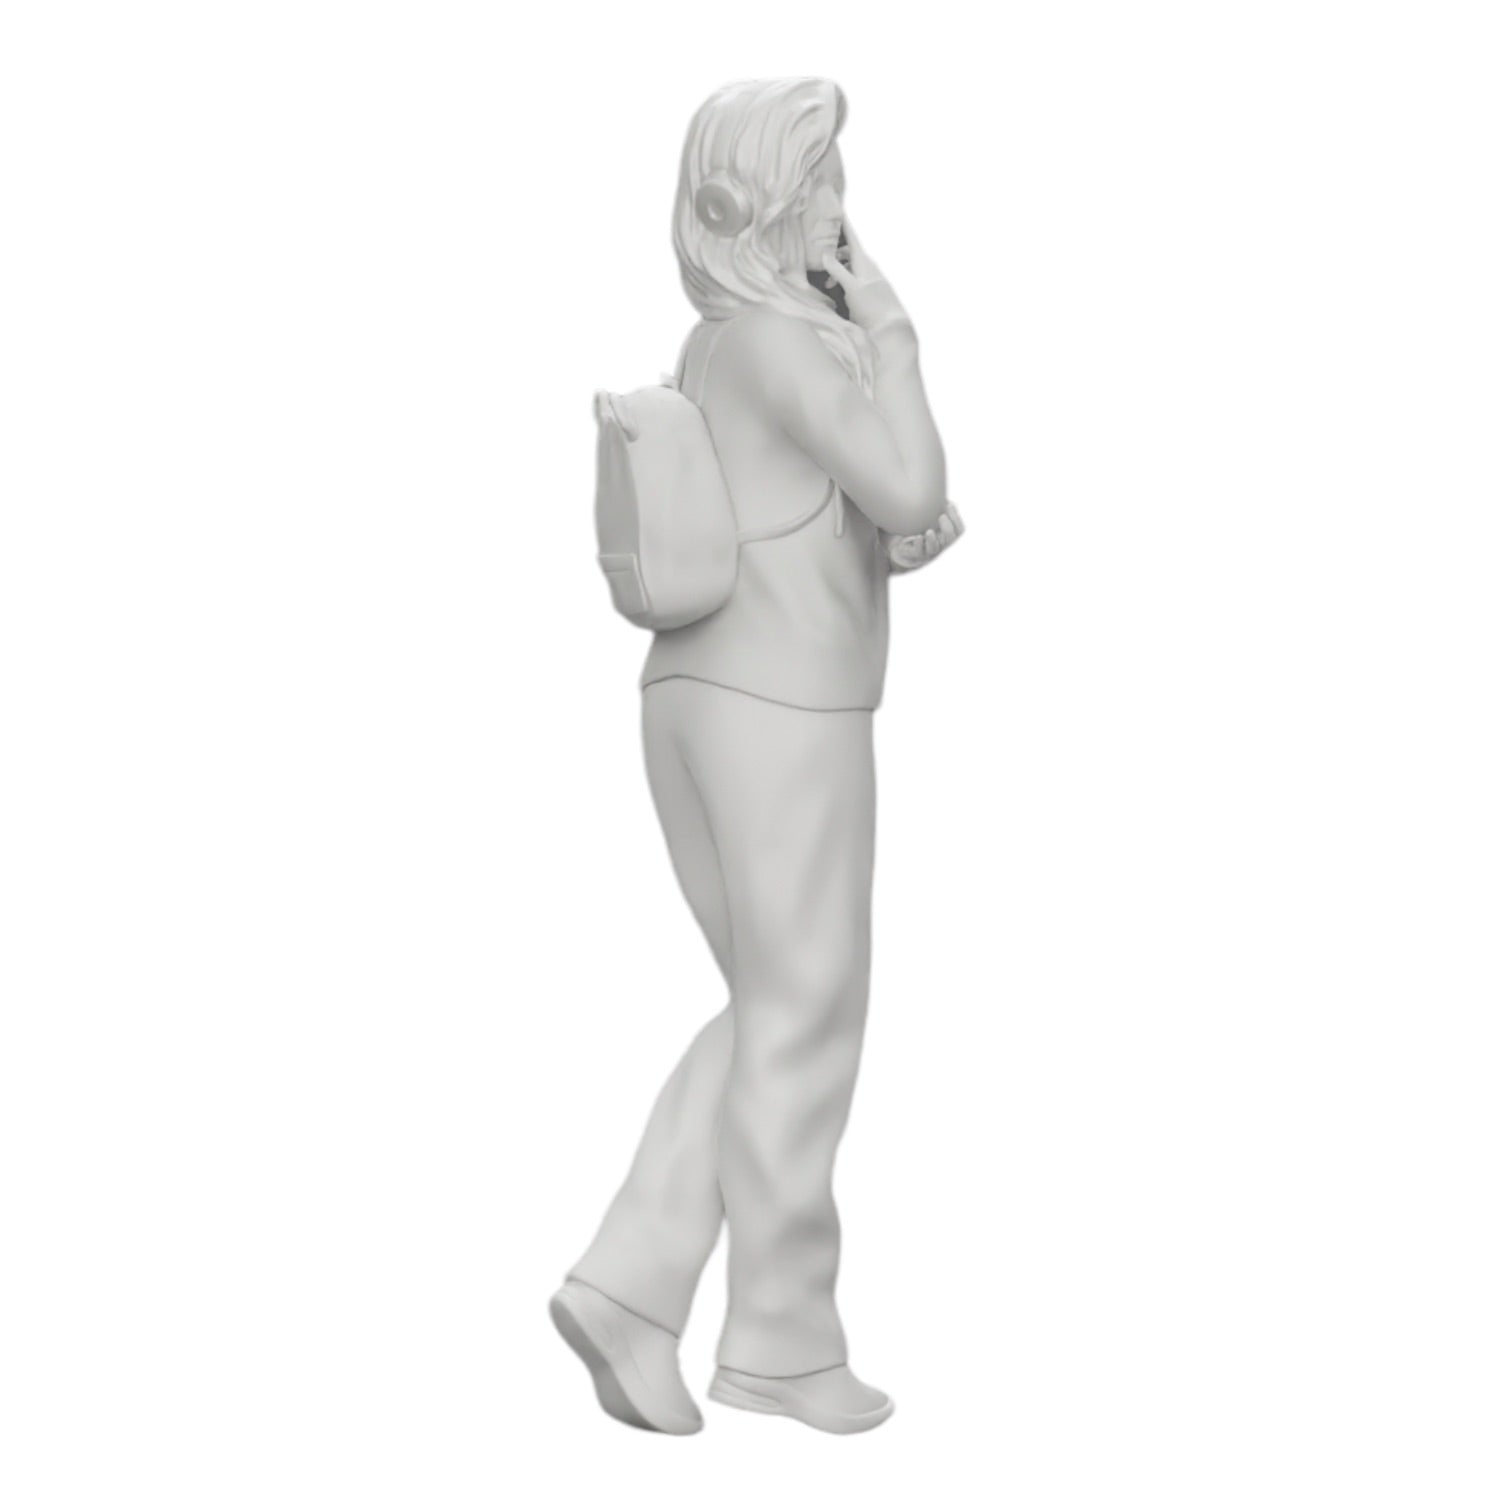 Diorama Modellbau Produktfoto 0: Nachdenkliche junge Frau mit Kopfhörern und Rucksack hört Musik (Ref Nr. A25)